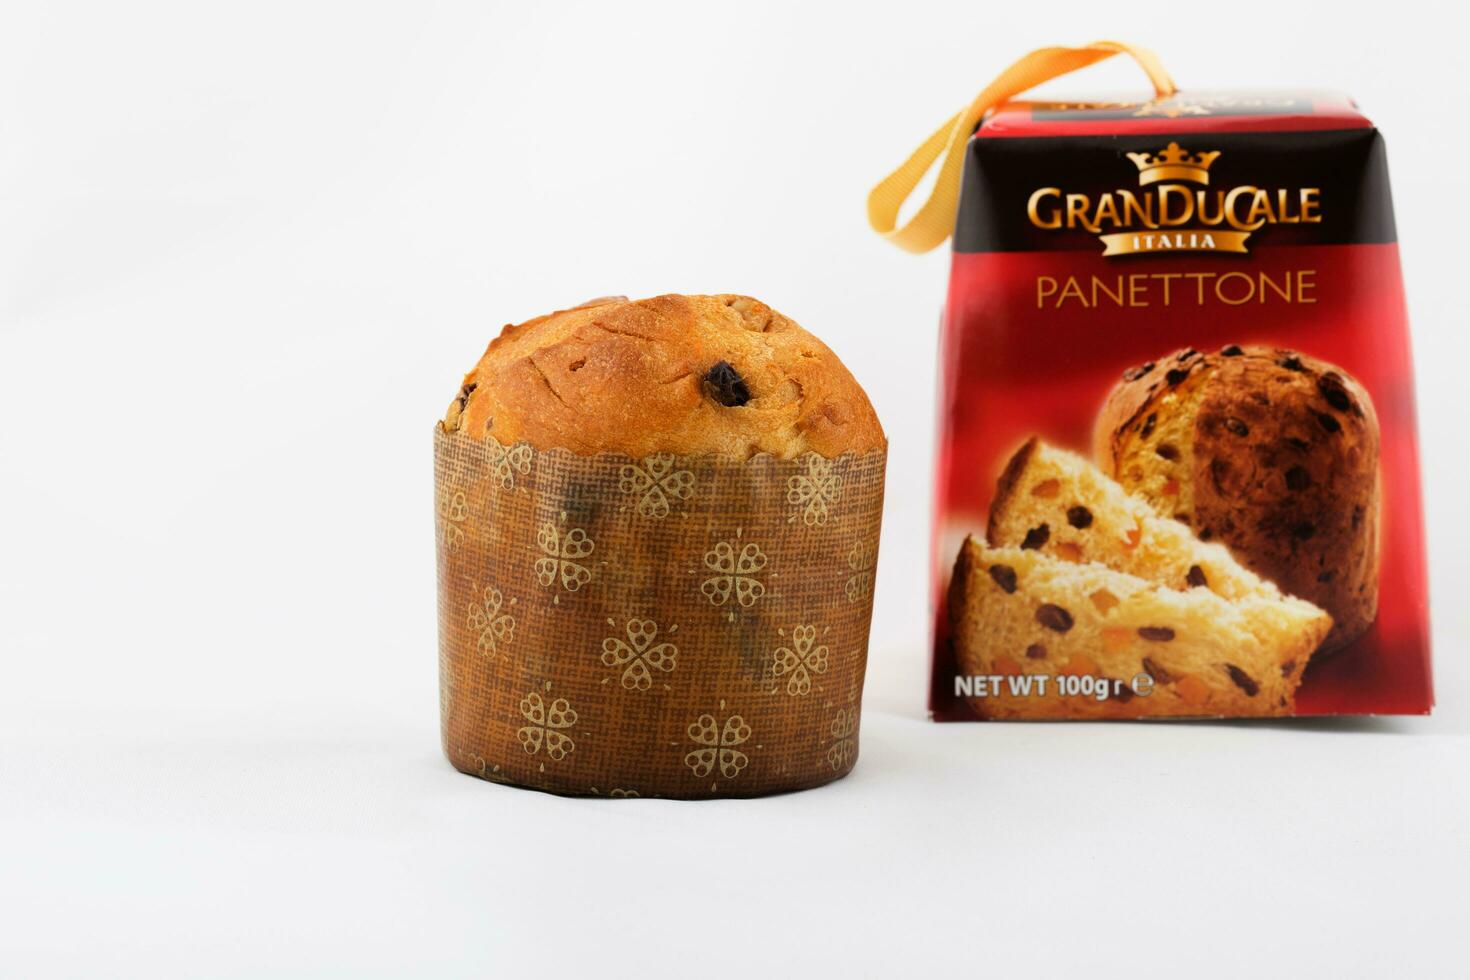 traditionell Italienisch Weihnachten Süss Kuchen -Panettone- von Italienisch Produzent granducale Italien foto